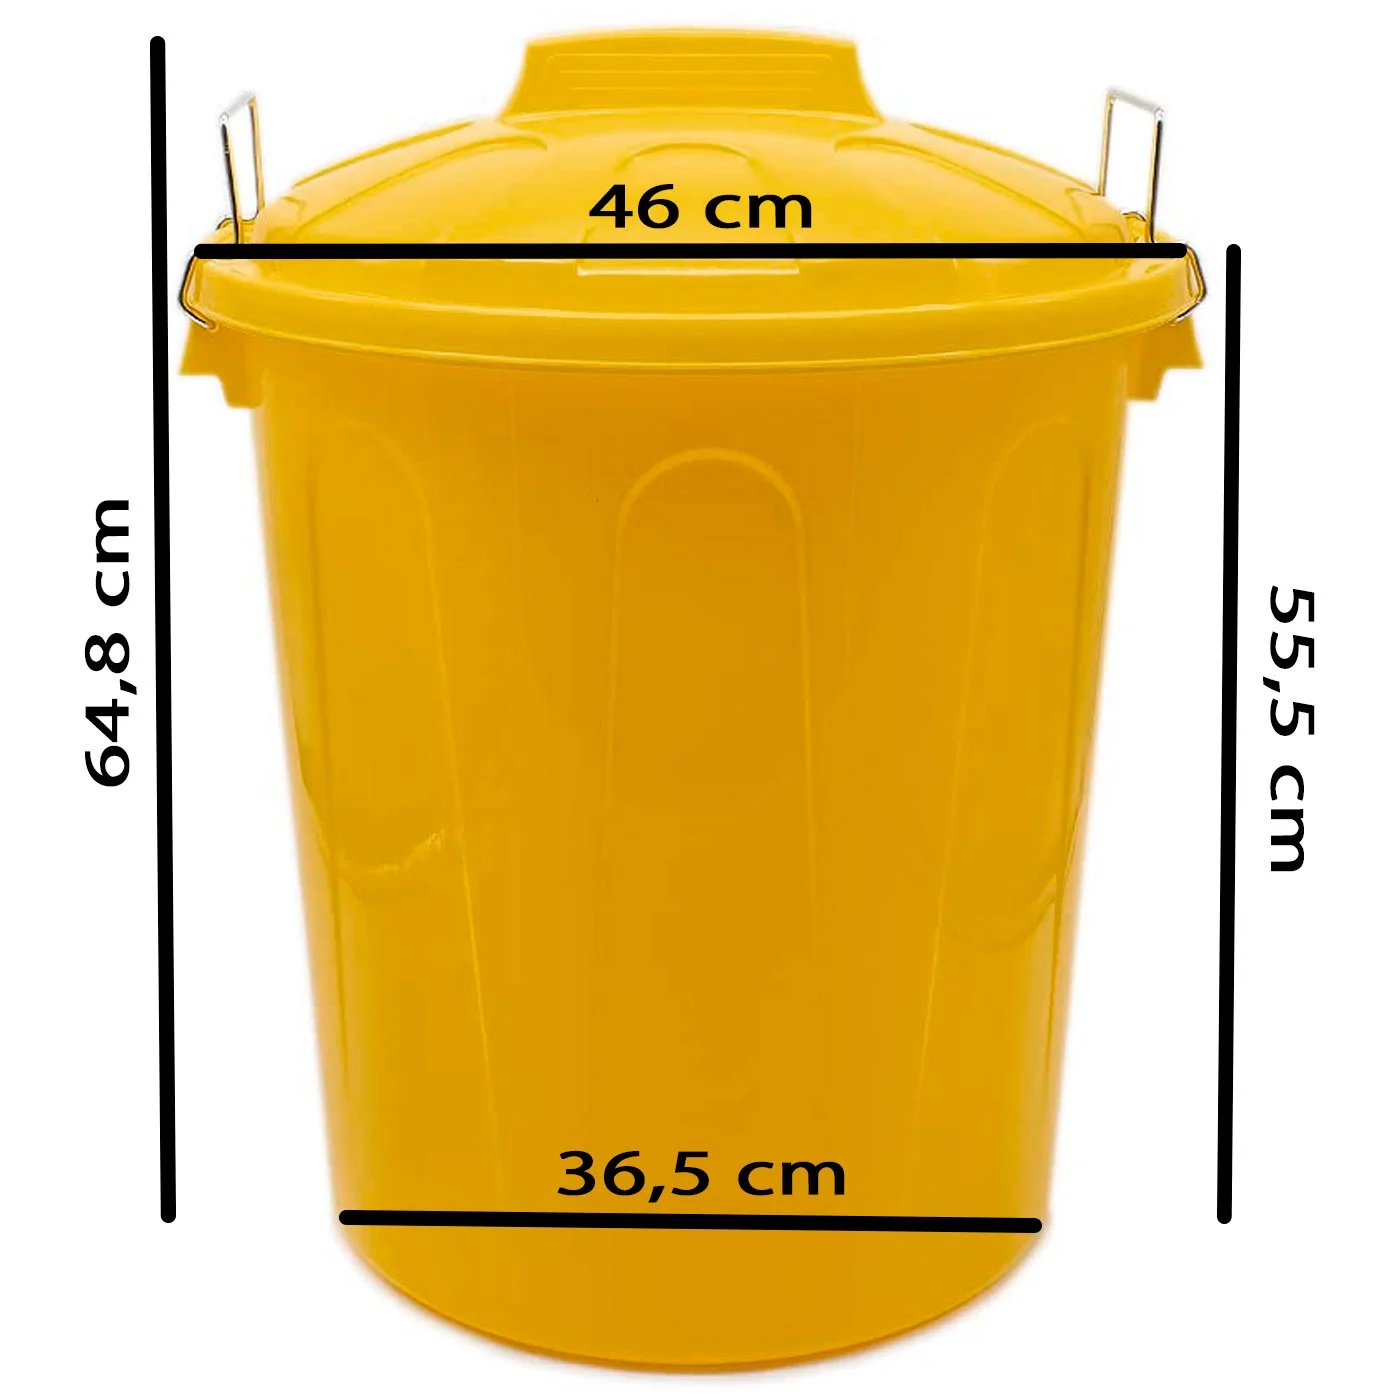 Tradineur - Cubo de basura de plástico resistente con tapa y asas